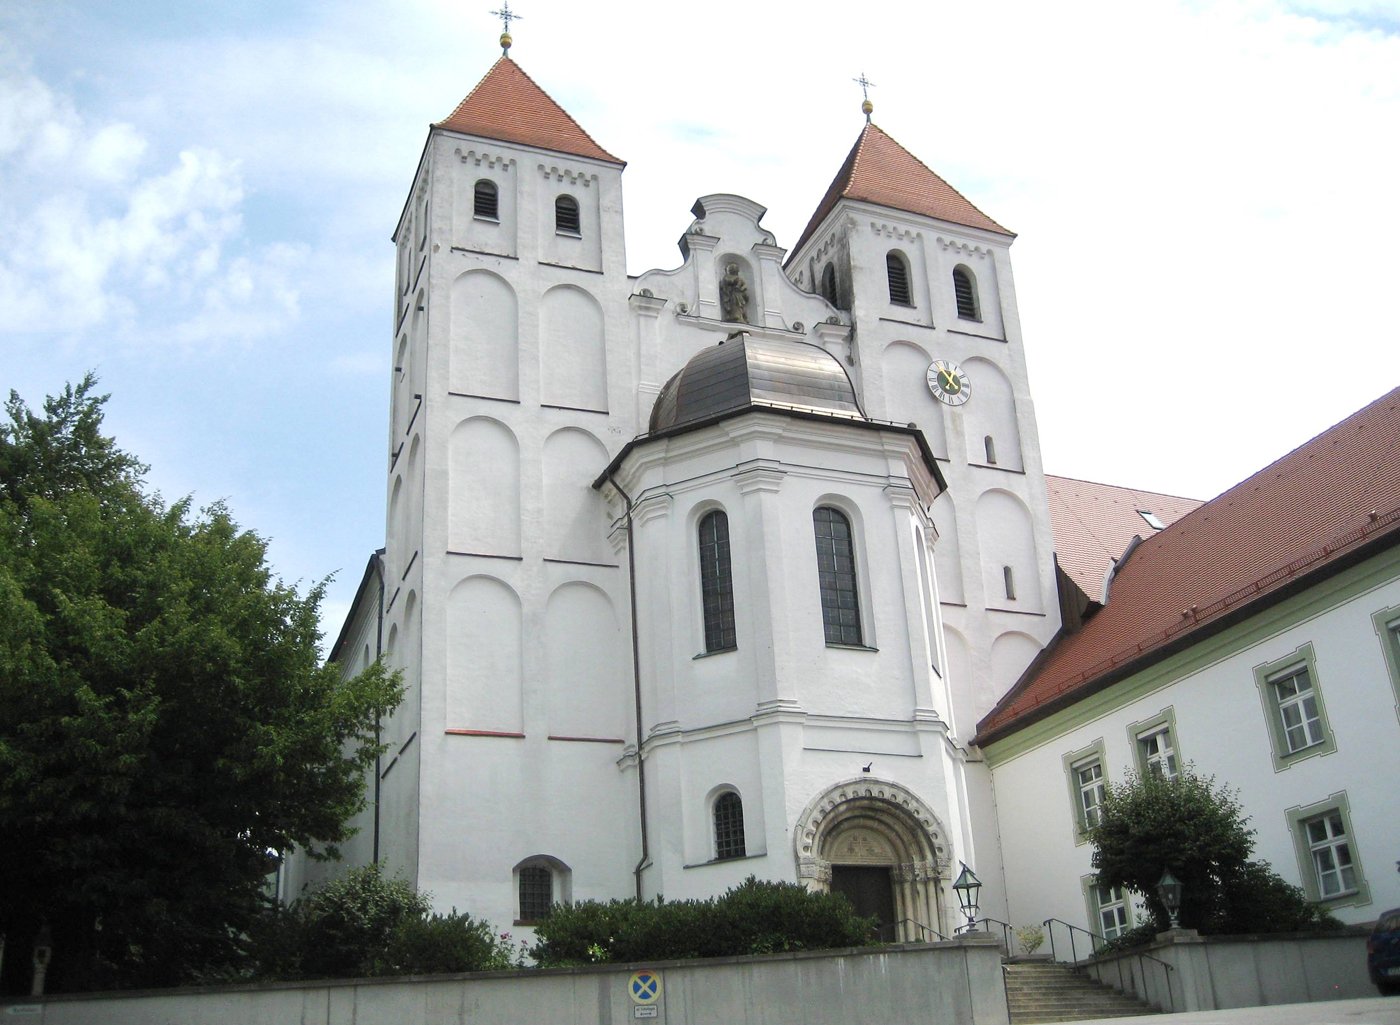 Aussenansicht der Pfarrkirche in Mallersdorf-Pfaffenberg